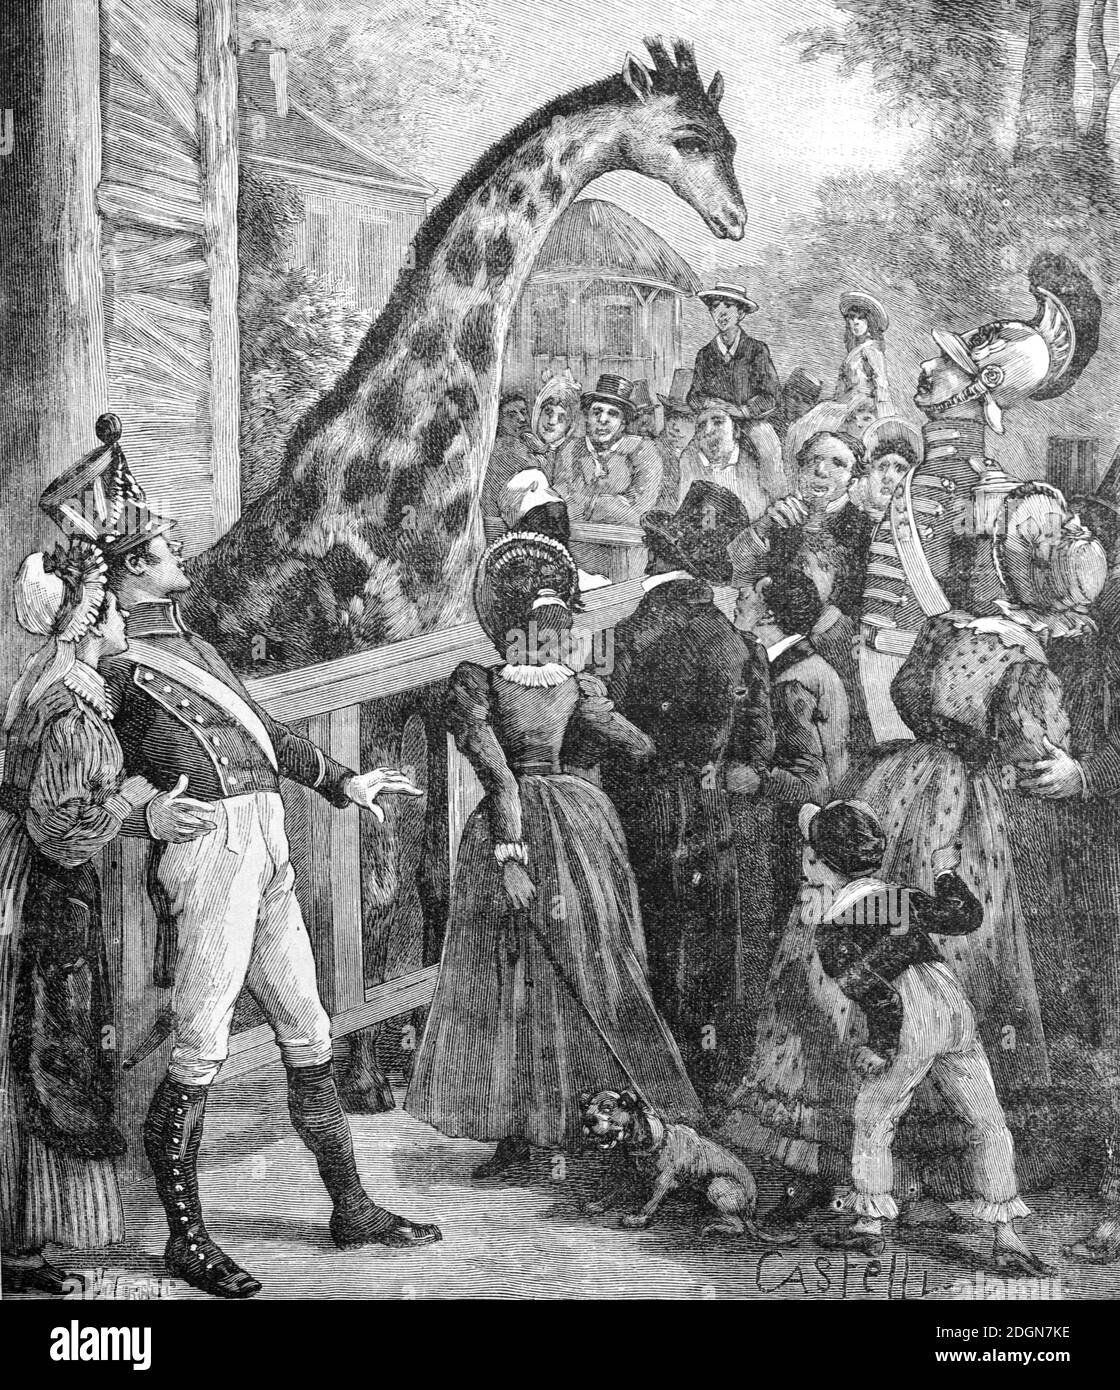 Les visiteurs admirent la première Giraffe à Paris et en Europe Au jardin zoologique d'Acclimatation ou au zoo de Paris à Bois De Boulogne 1827 Paris France (Engr 1895 Castelli) Illustration ancienne ou gravure Banque D'Images